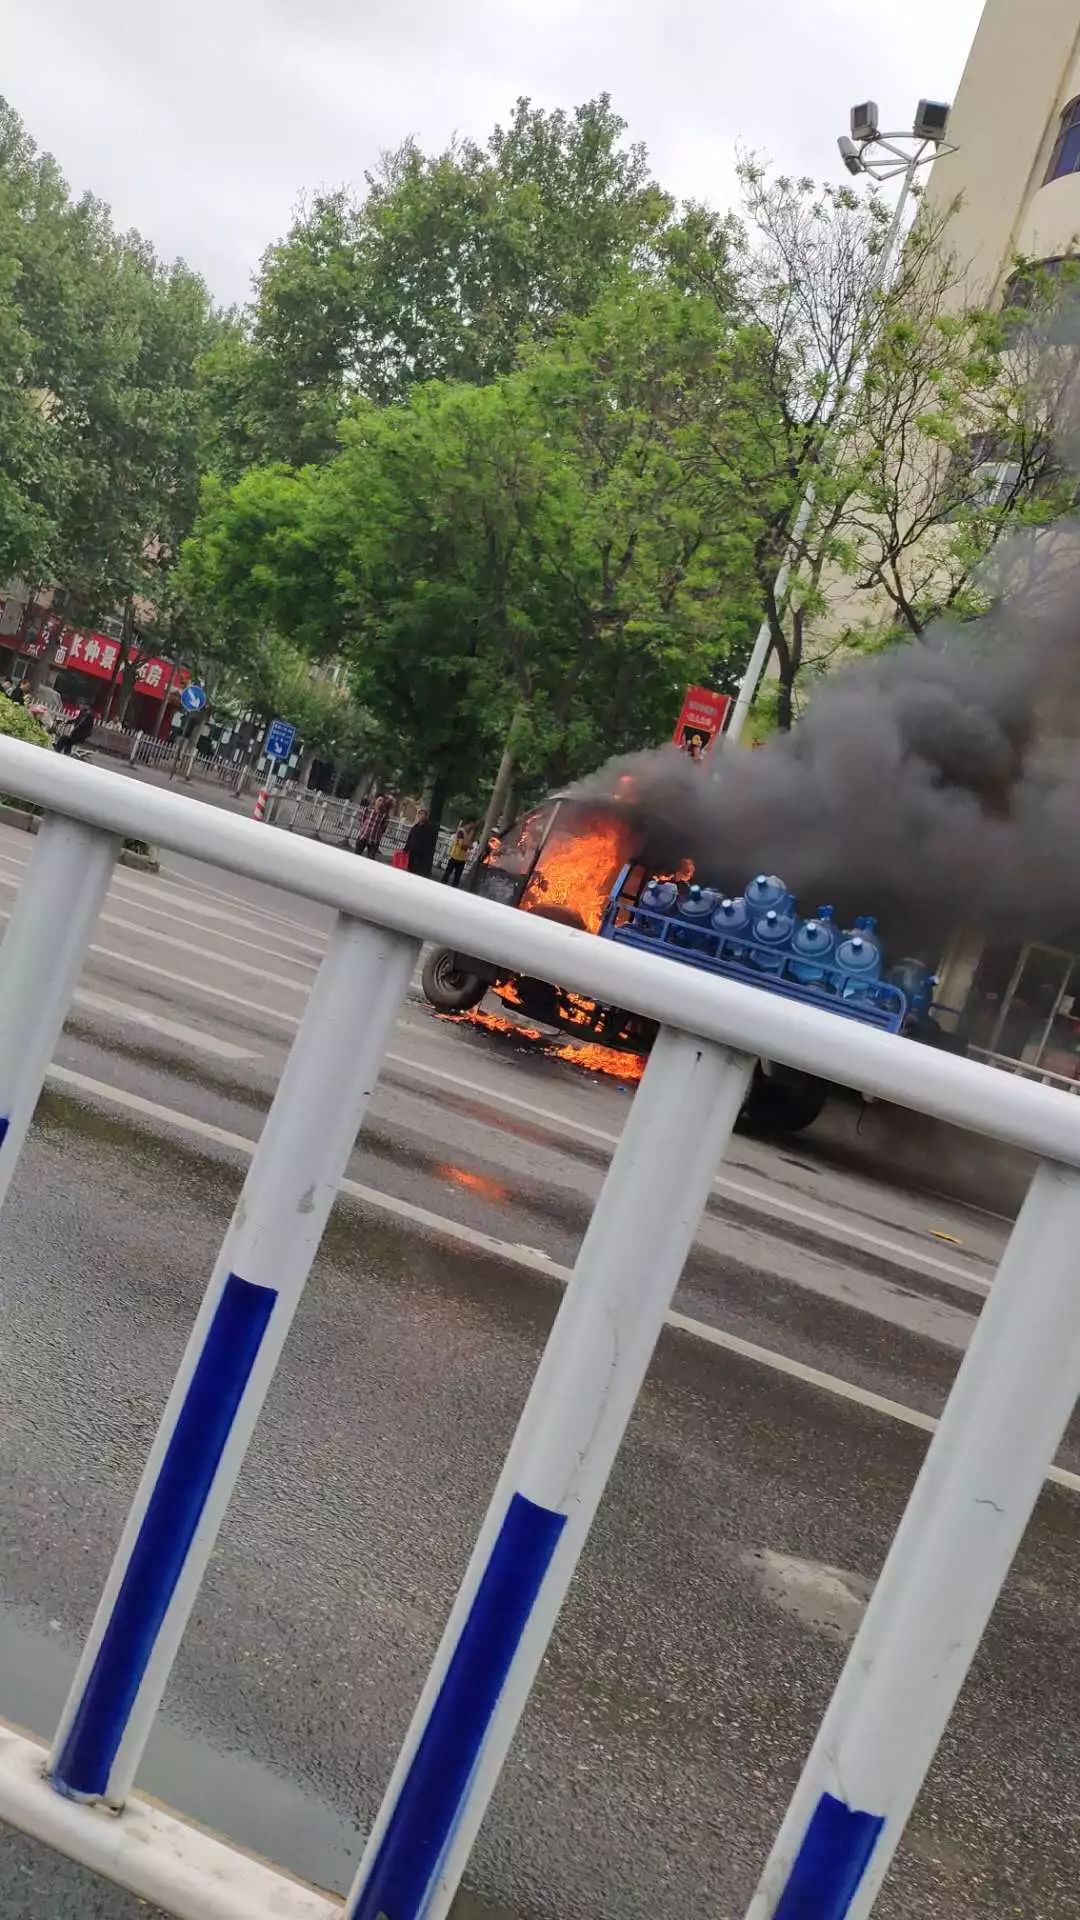 漯河湘江路和解放路口,一送水车头被烧成空架!